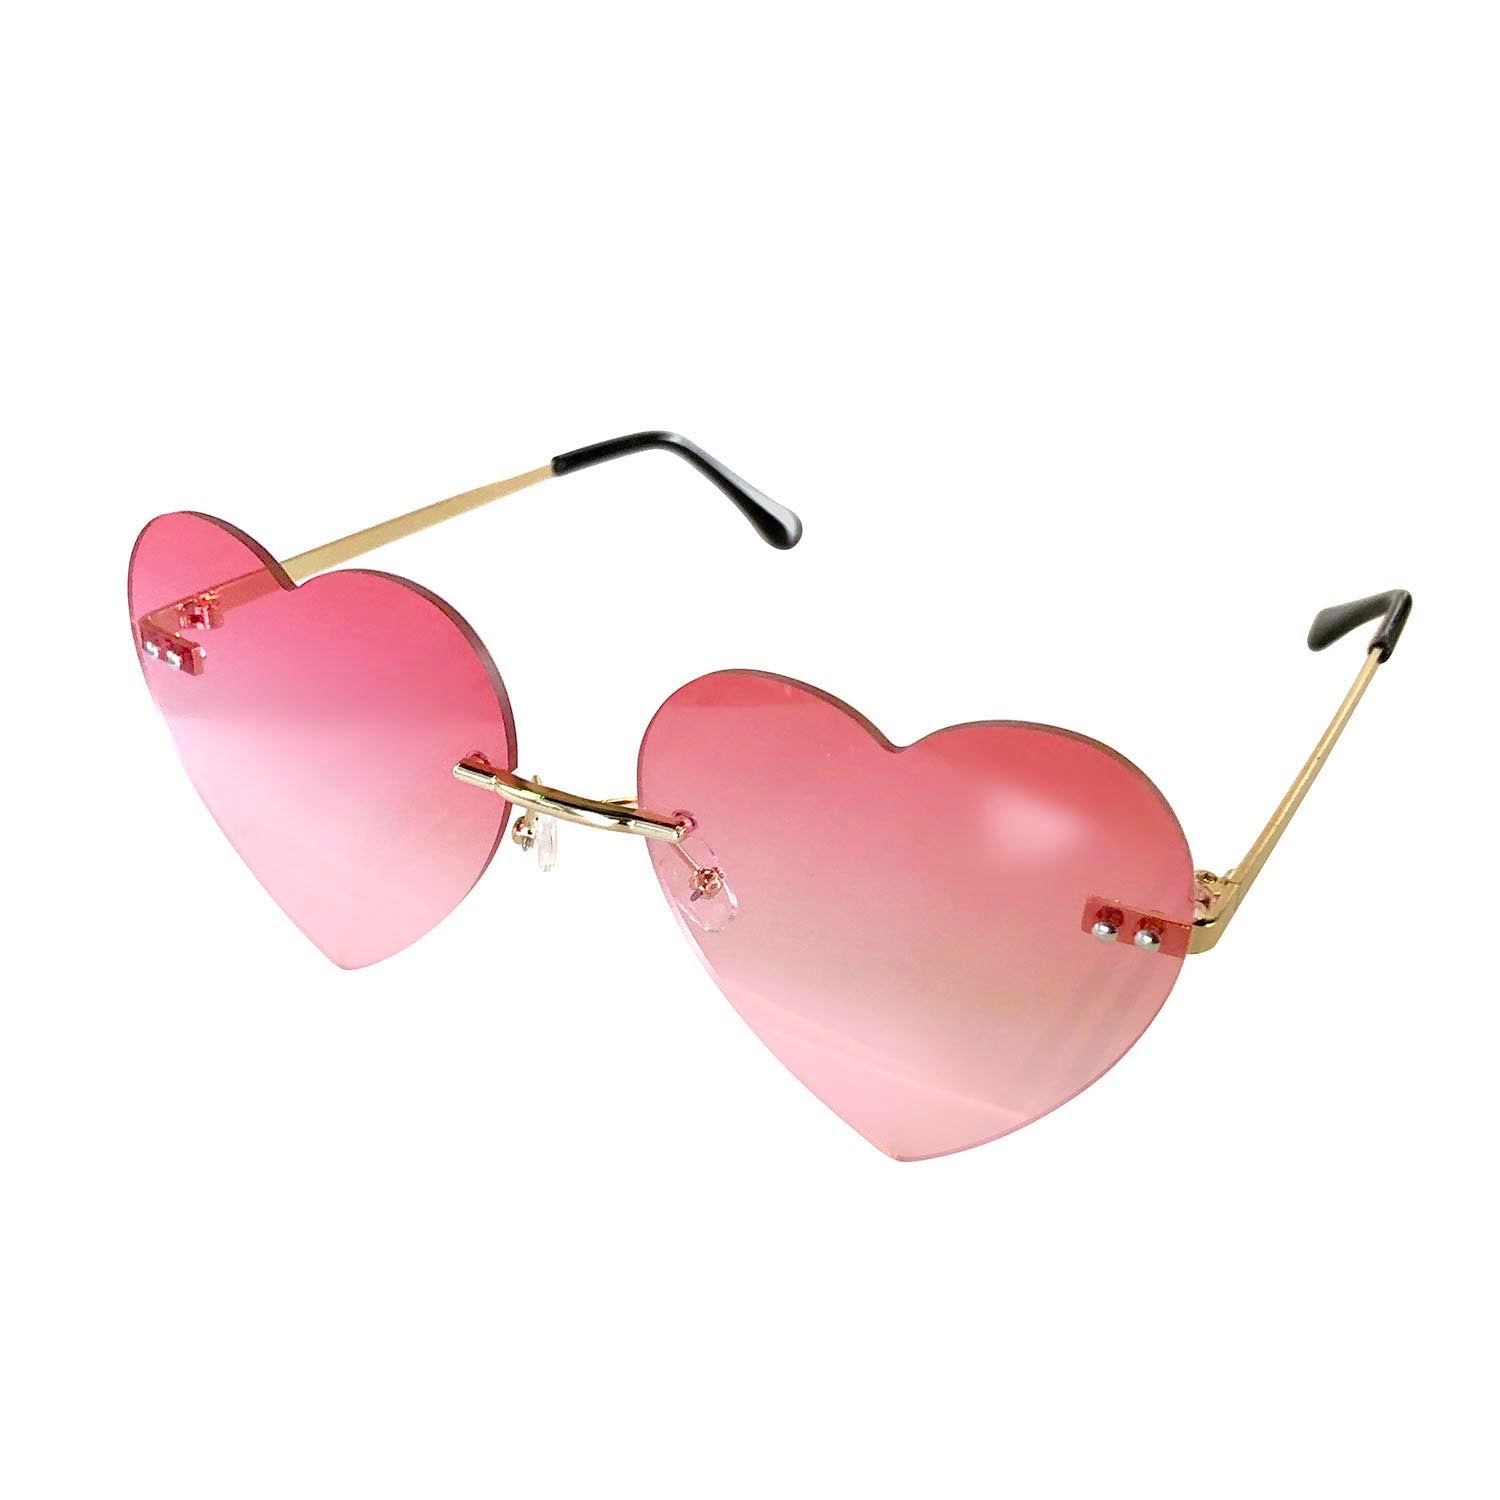 SPKS Novelty Hearts Sunglasses